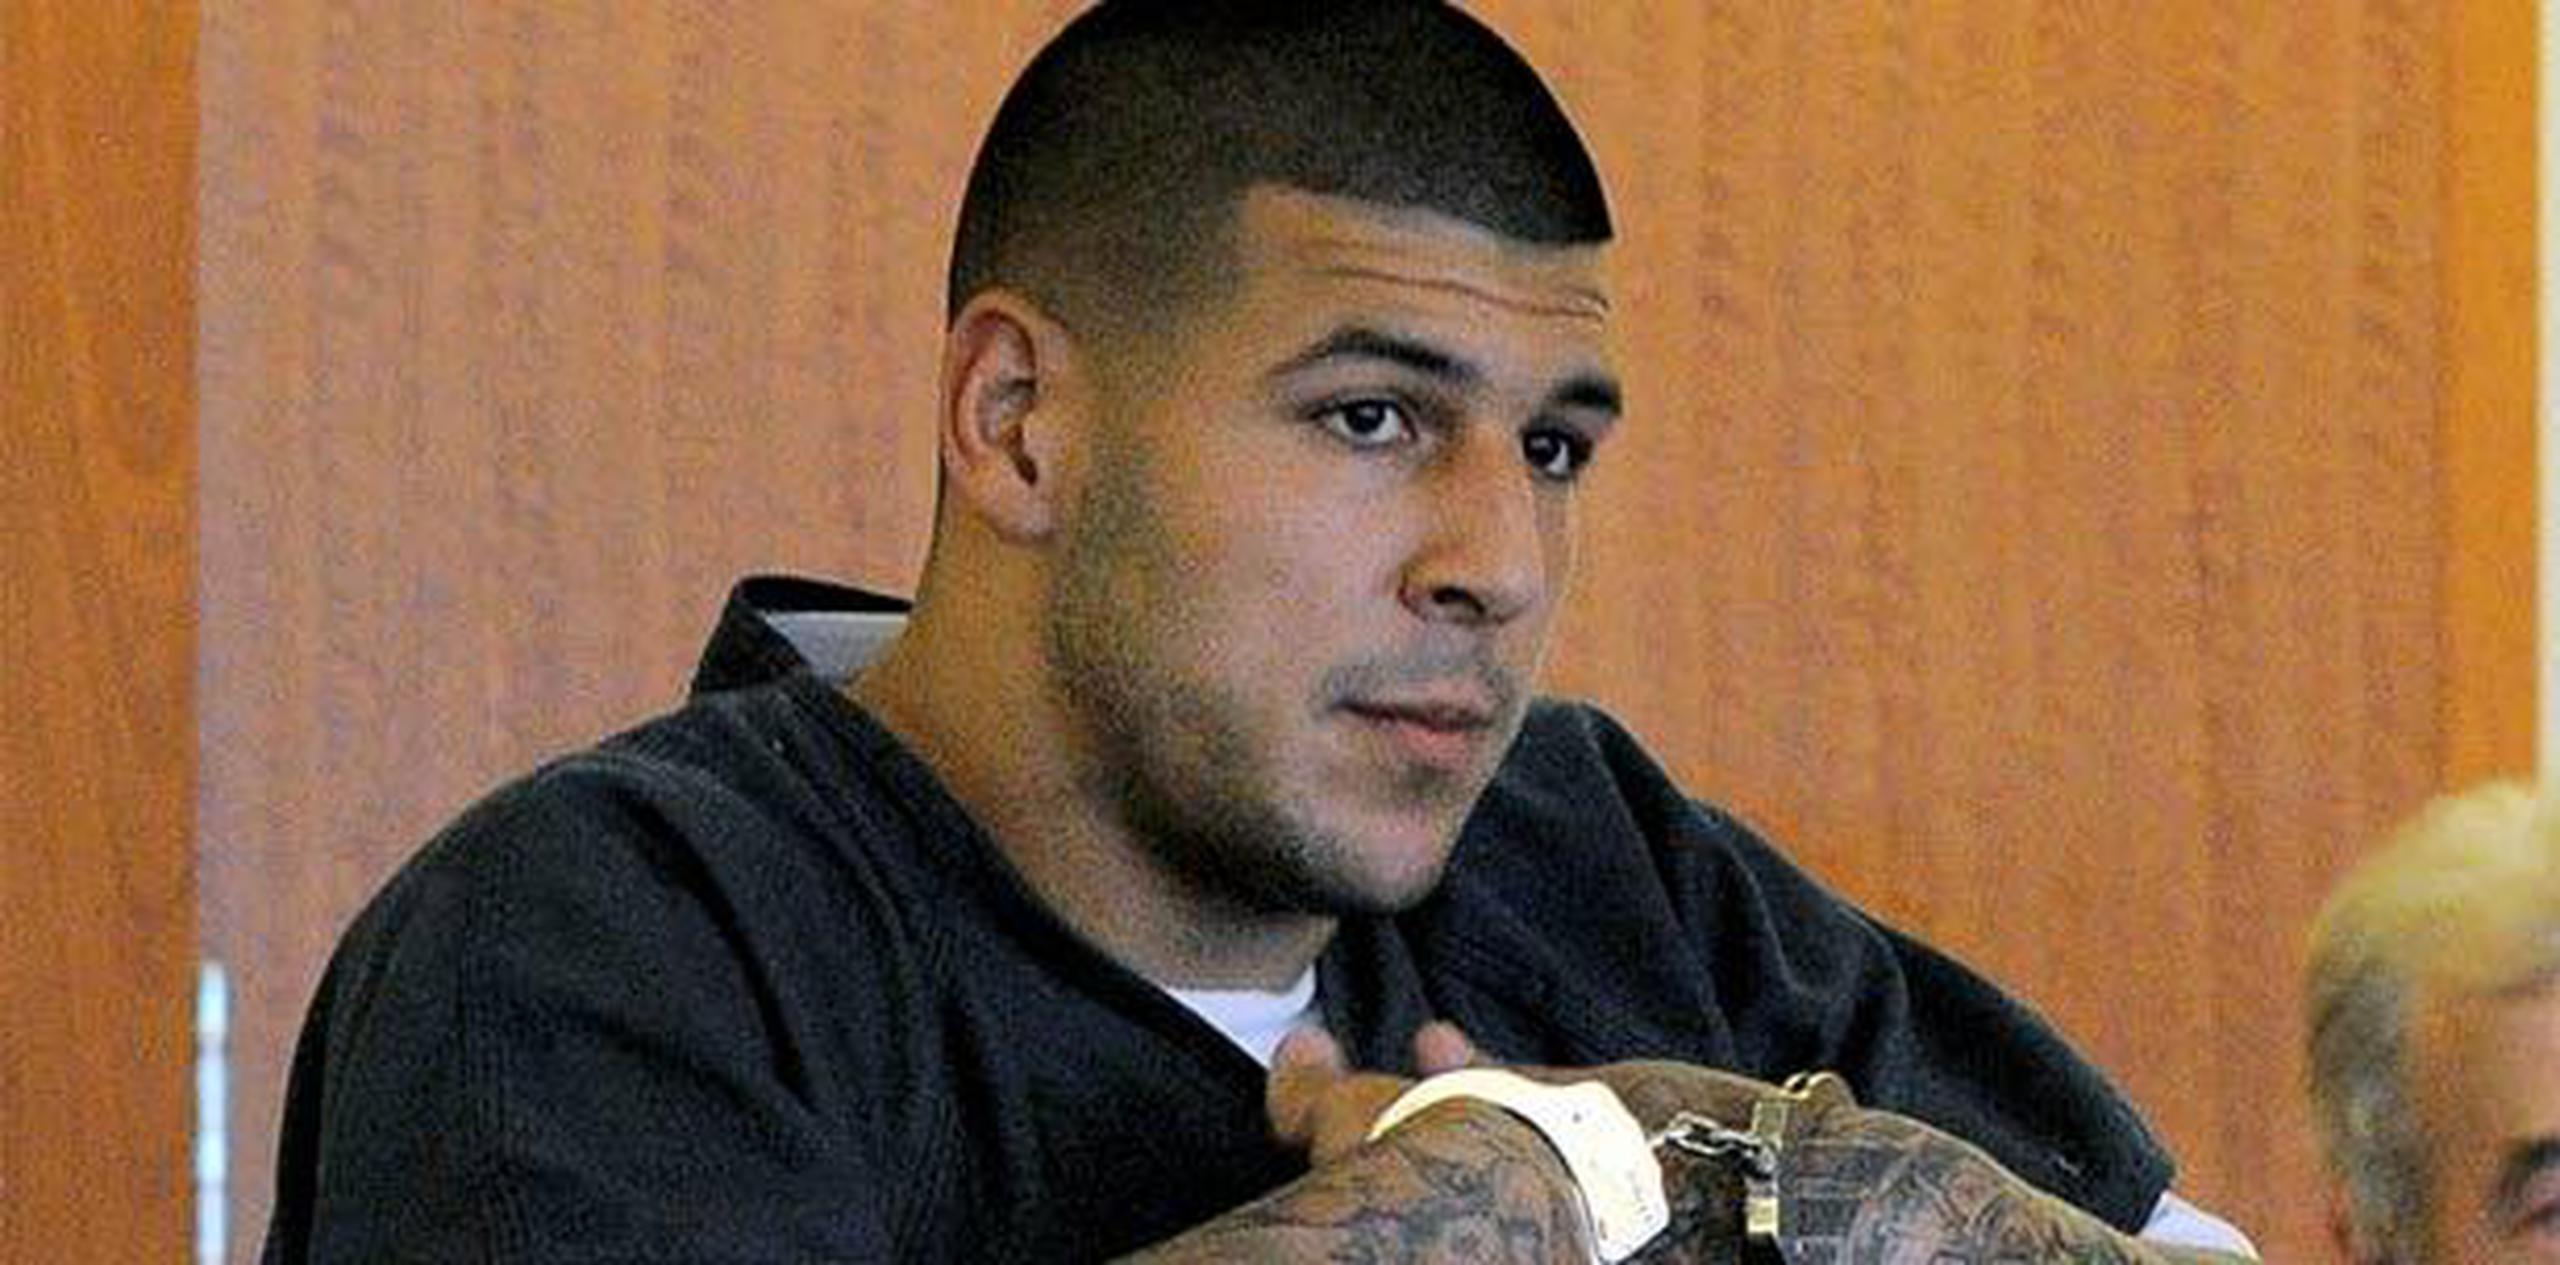 Hernández se ha declarado inocente de la muerte de Odin Lloyd, que recibió seis balazos en un parque industrial a menos de una milla de la casa del ex jugador de la NFL en North Attleborough, Massachusetts, el 17 de junio del 2013. (AP)